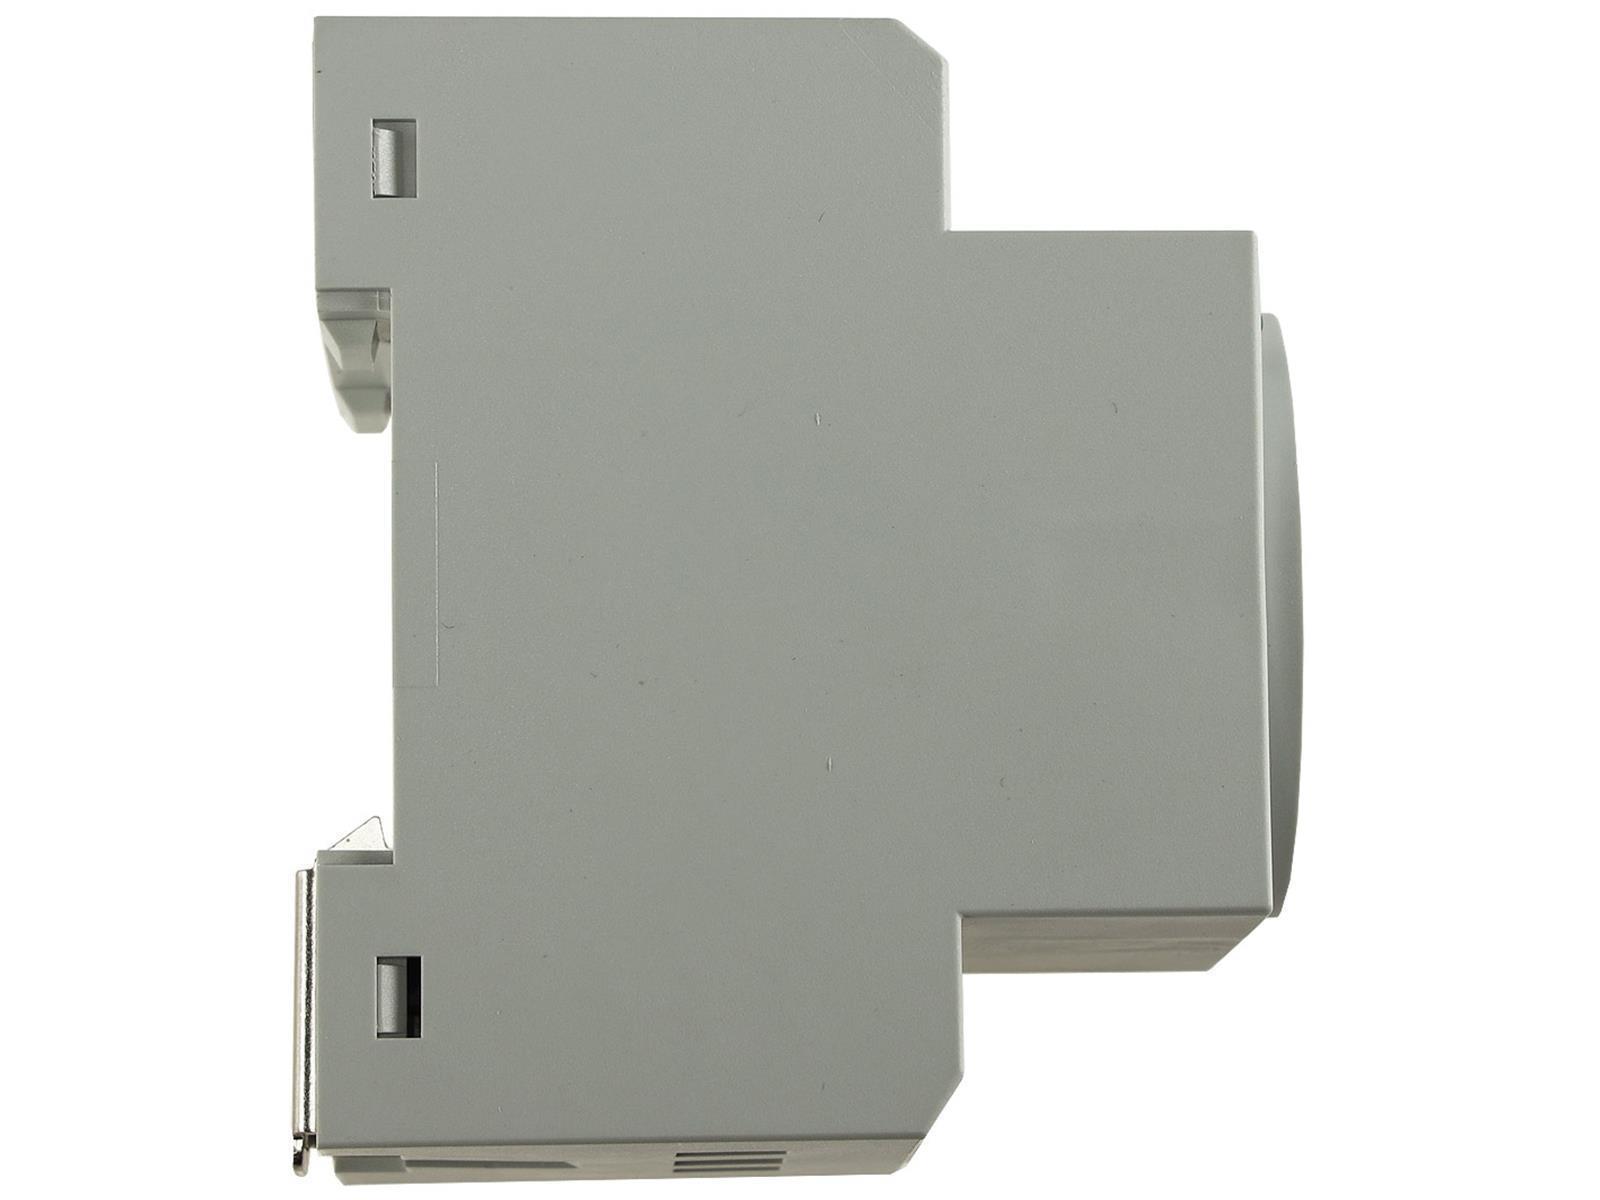 Schutzkontakt-Steckdose für Hutschienemit LED, 230V, 16A, VDE